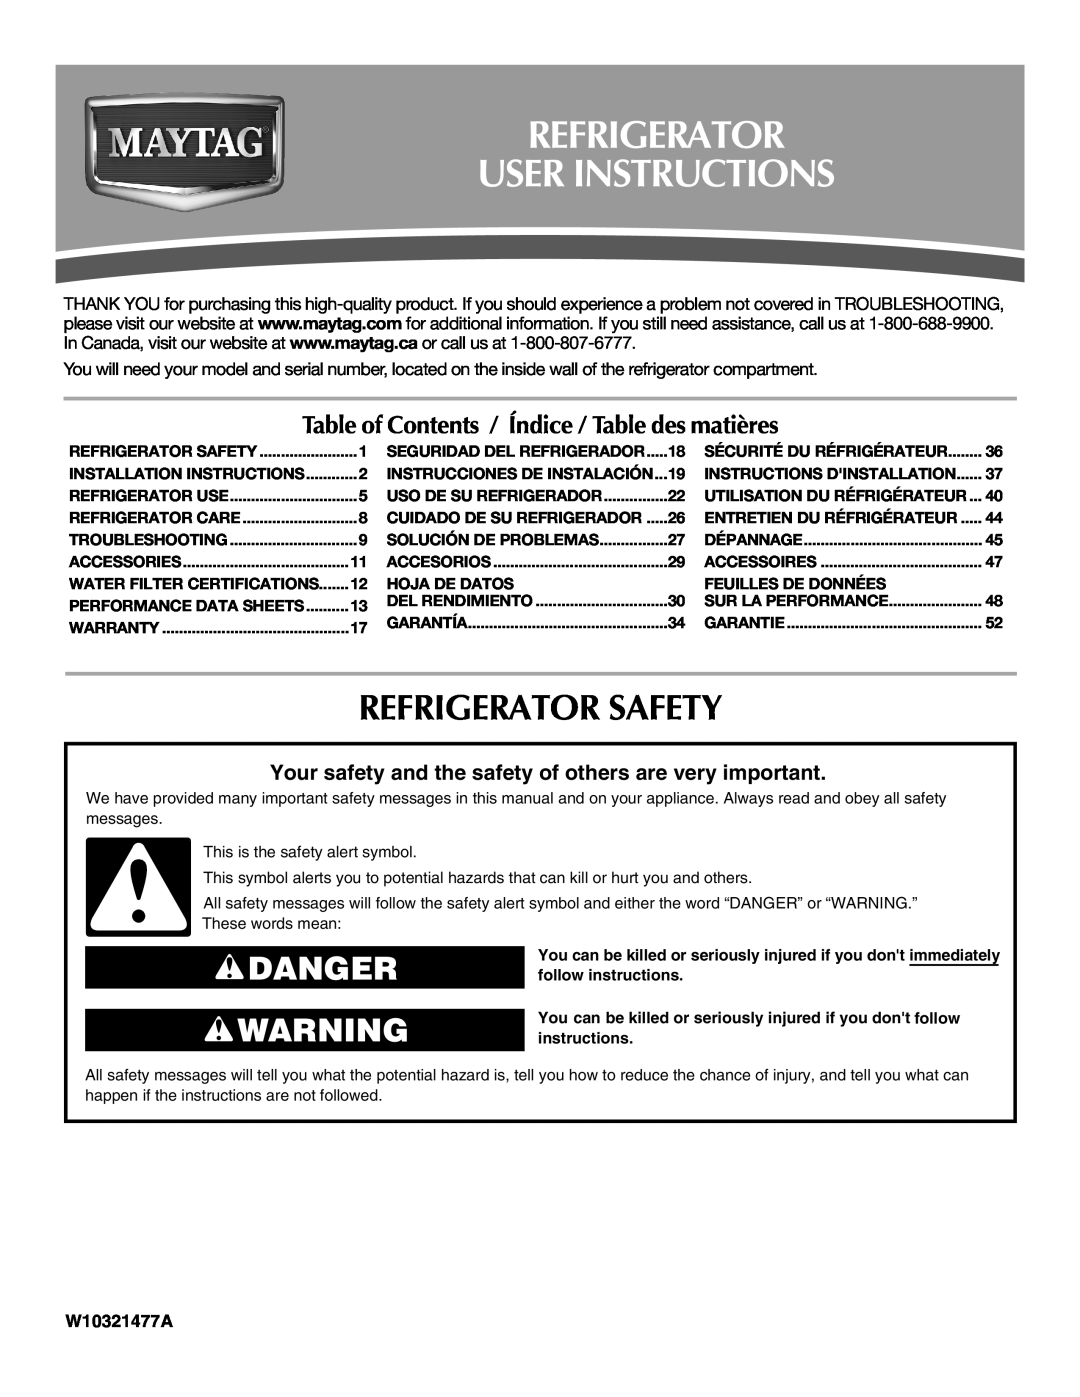 Maytag W10321477A installation instructions Refrigerator User Instructions, Refrigerator Safety, Danger 